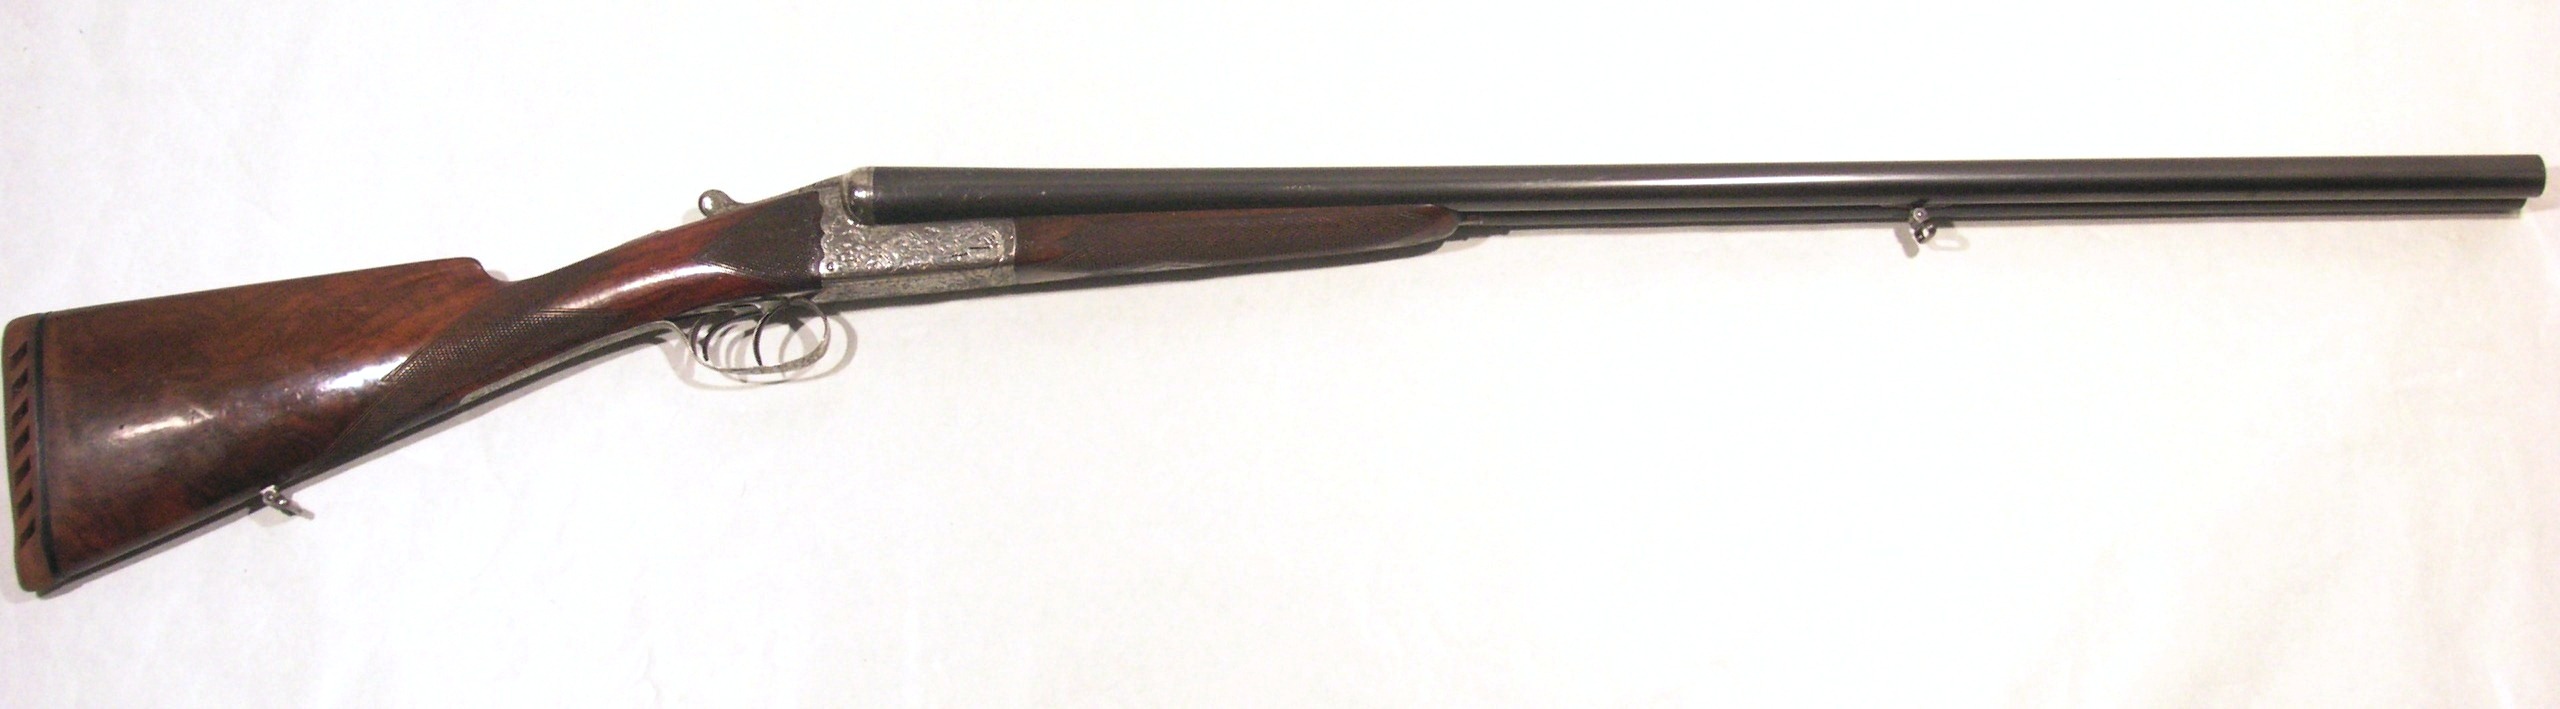 Escopeta A.LEBEAU COURALLY, modelo GRANDE RUSEE, calibre 12, nº 14717-0